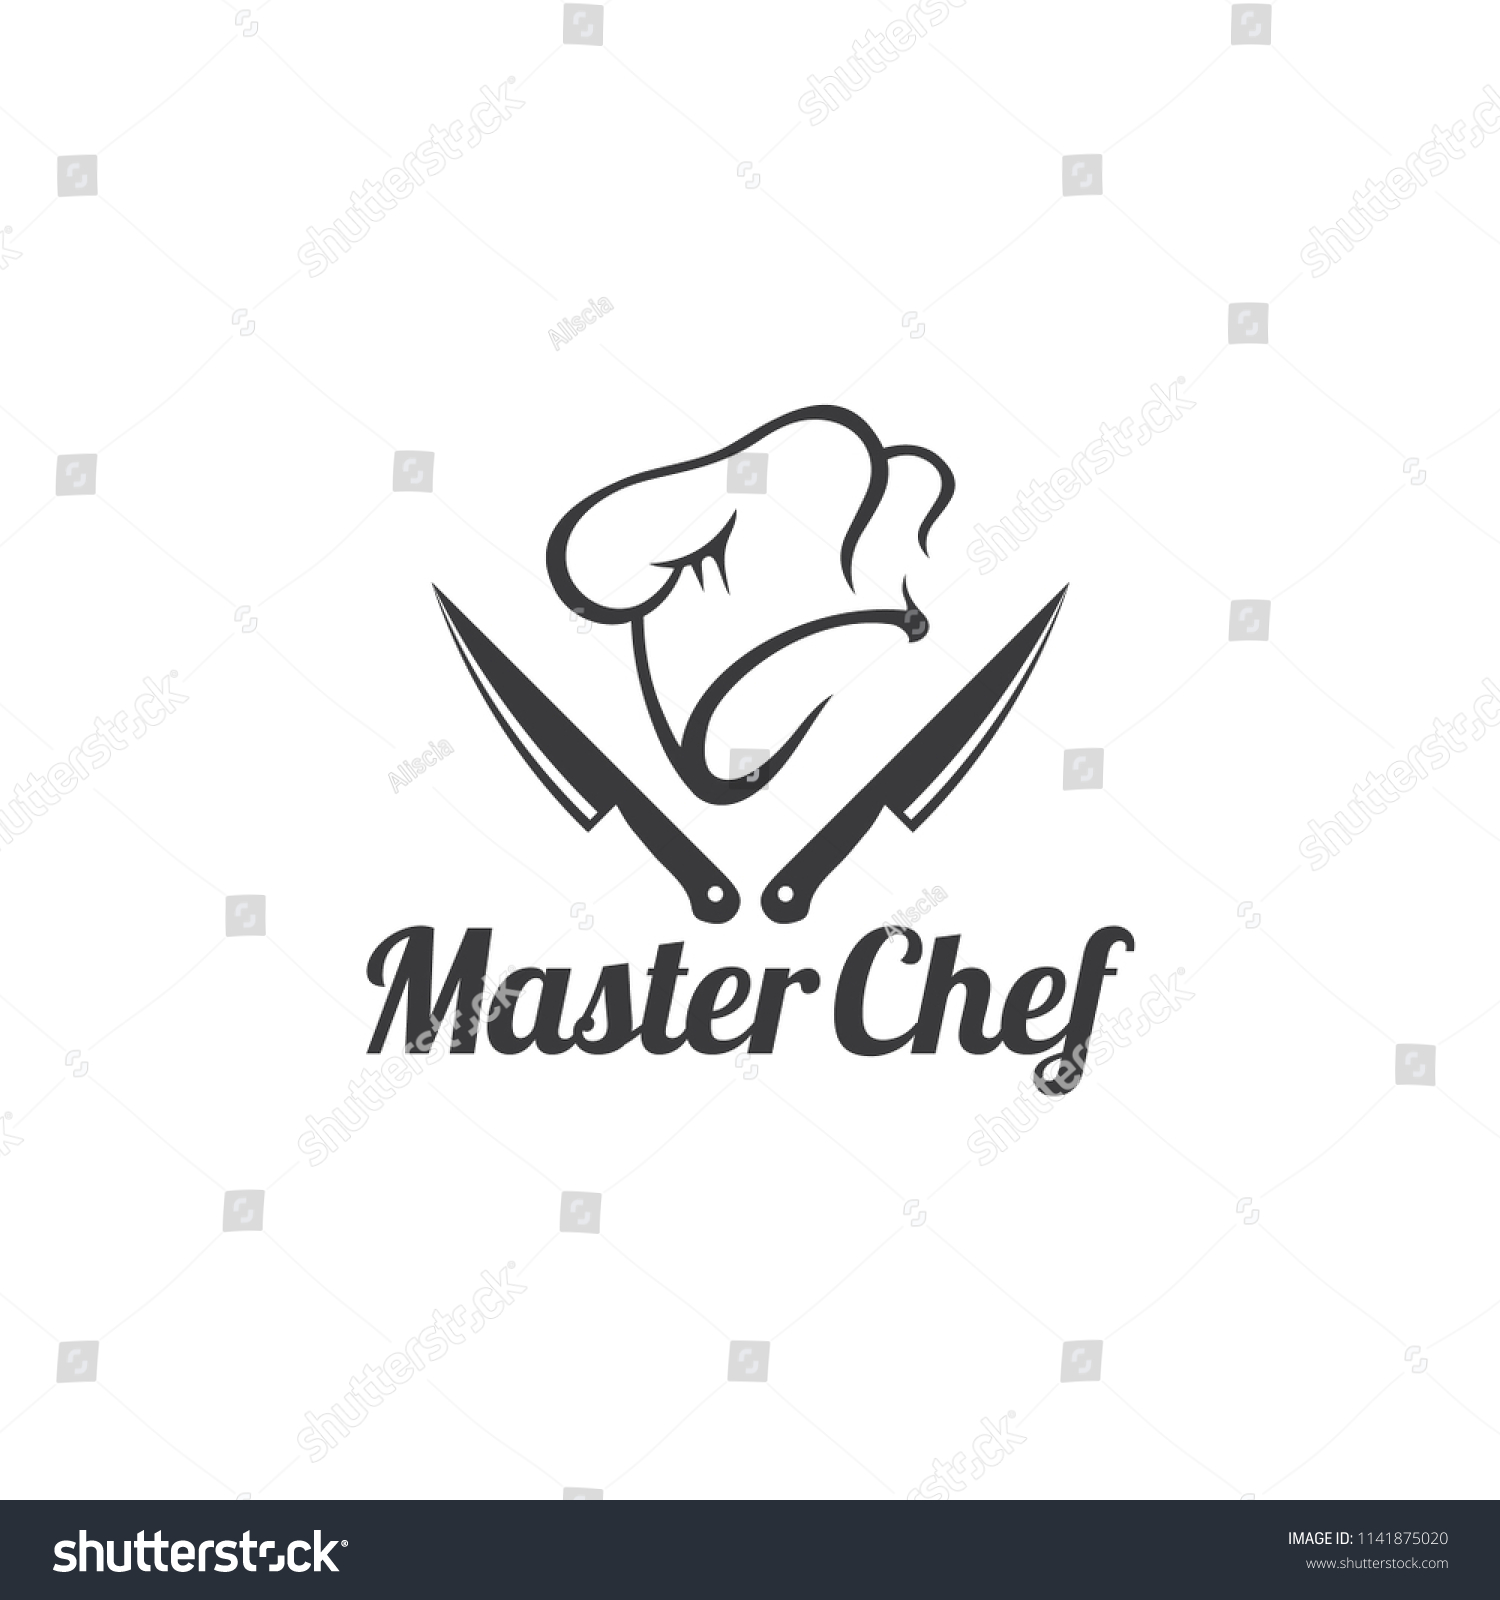 Master Chef Logo Design Vector Stock Vector Royalty Free 1141875020